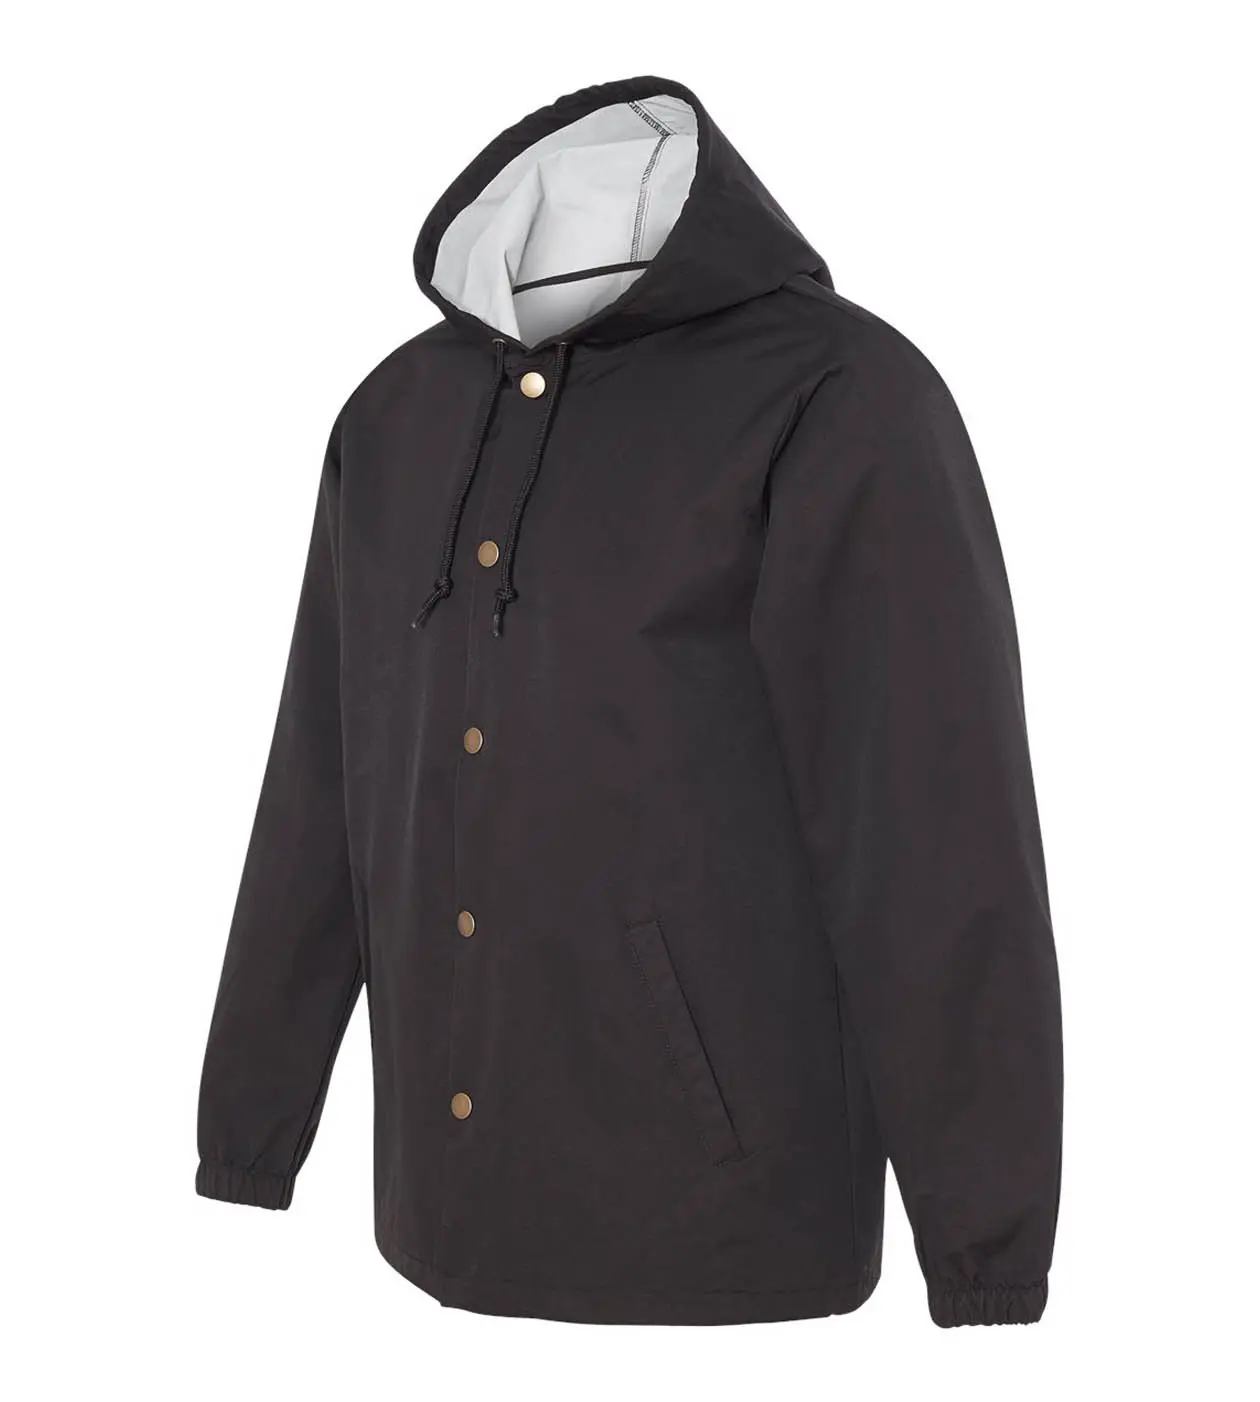 Giacca da uomo impermeabile con cappuccio giacca Casual in Nylon leggero giacca a vento giacca impermeabile moda